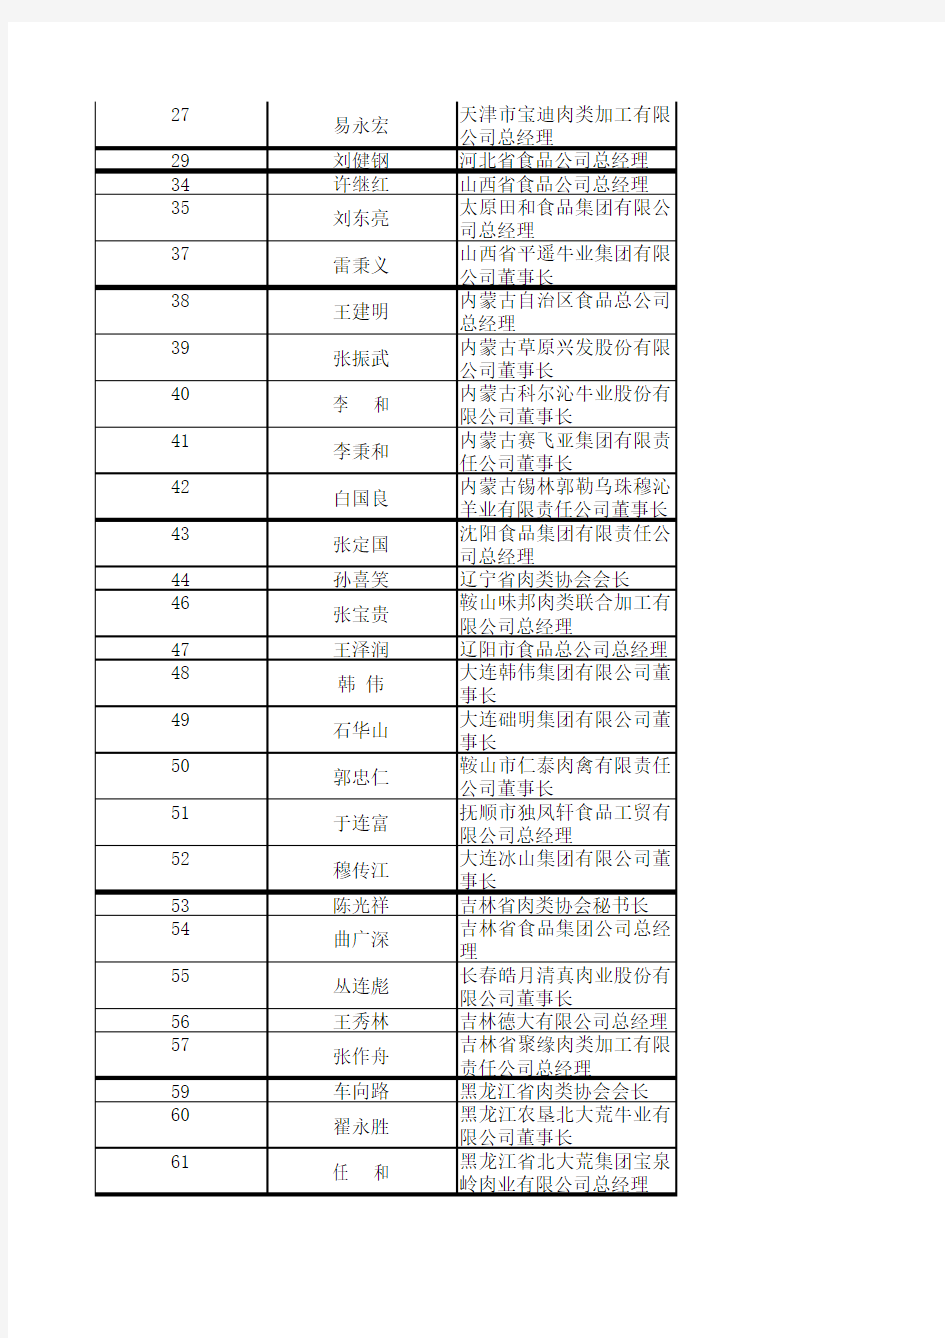 中国肉类协会第四届常务理事名单带资料